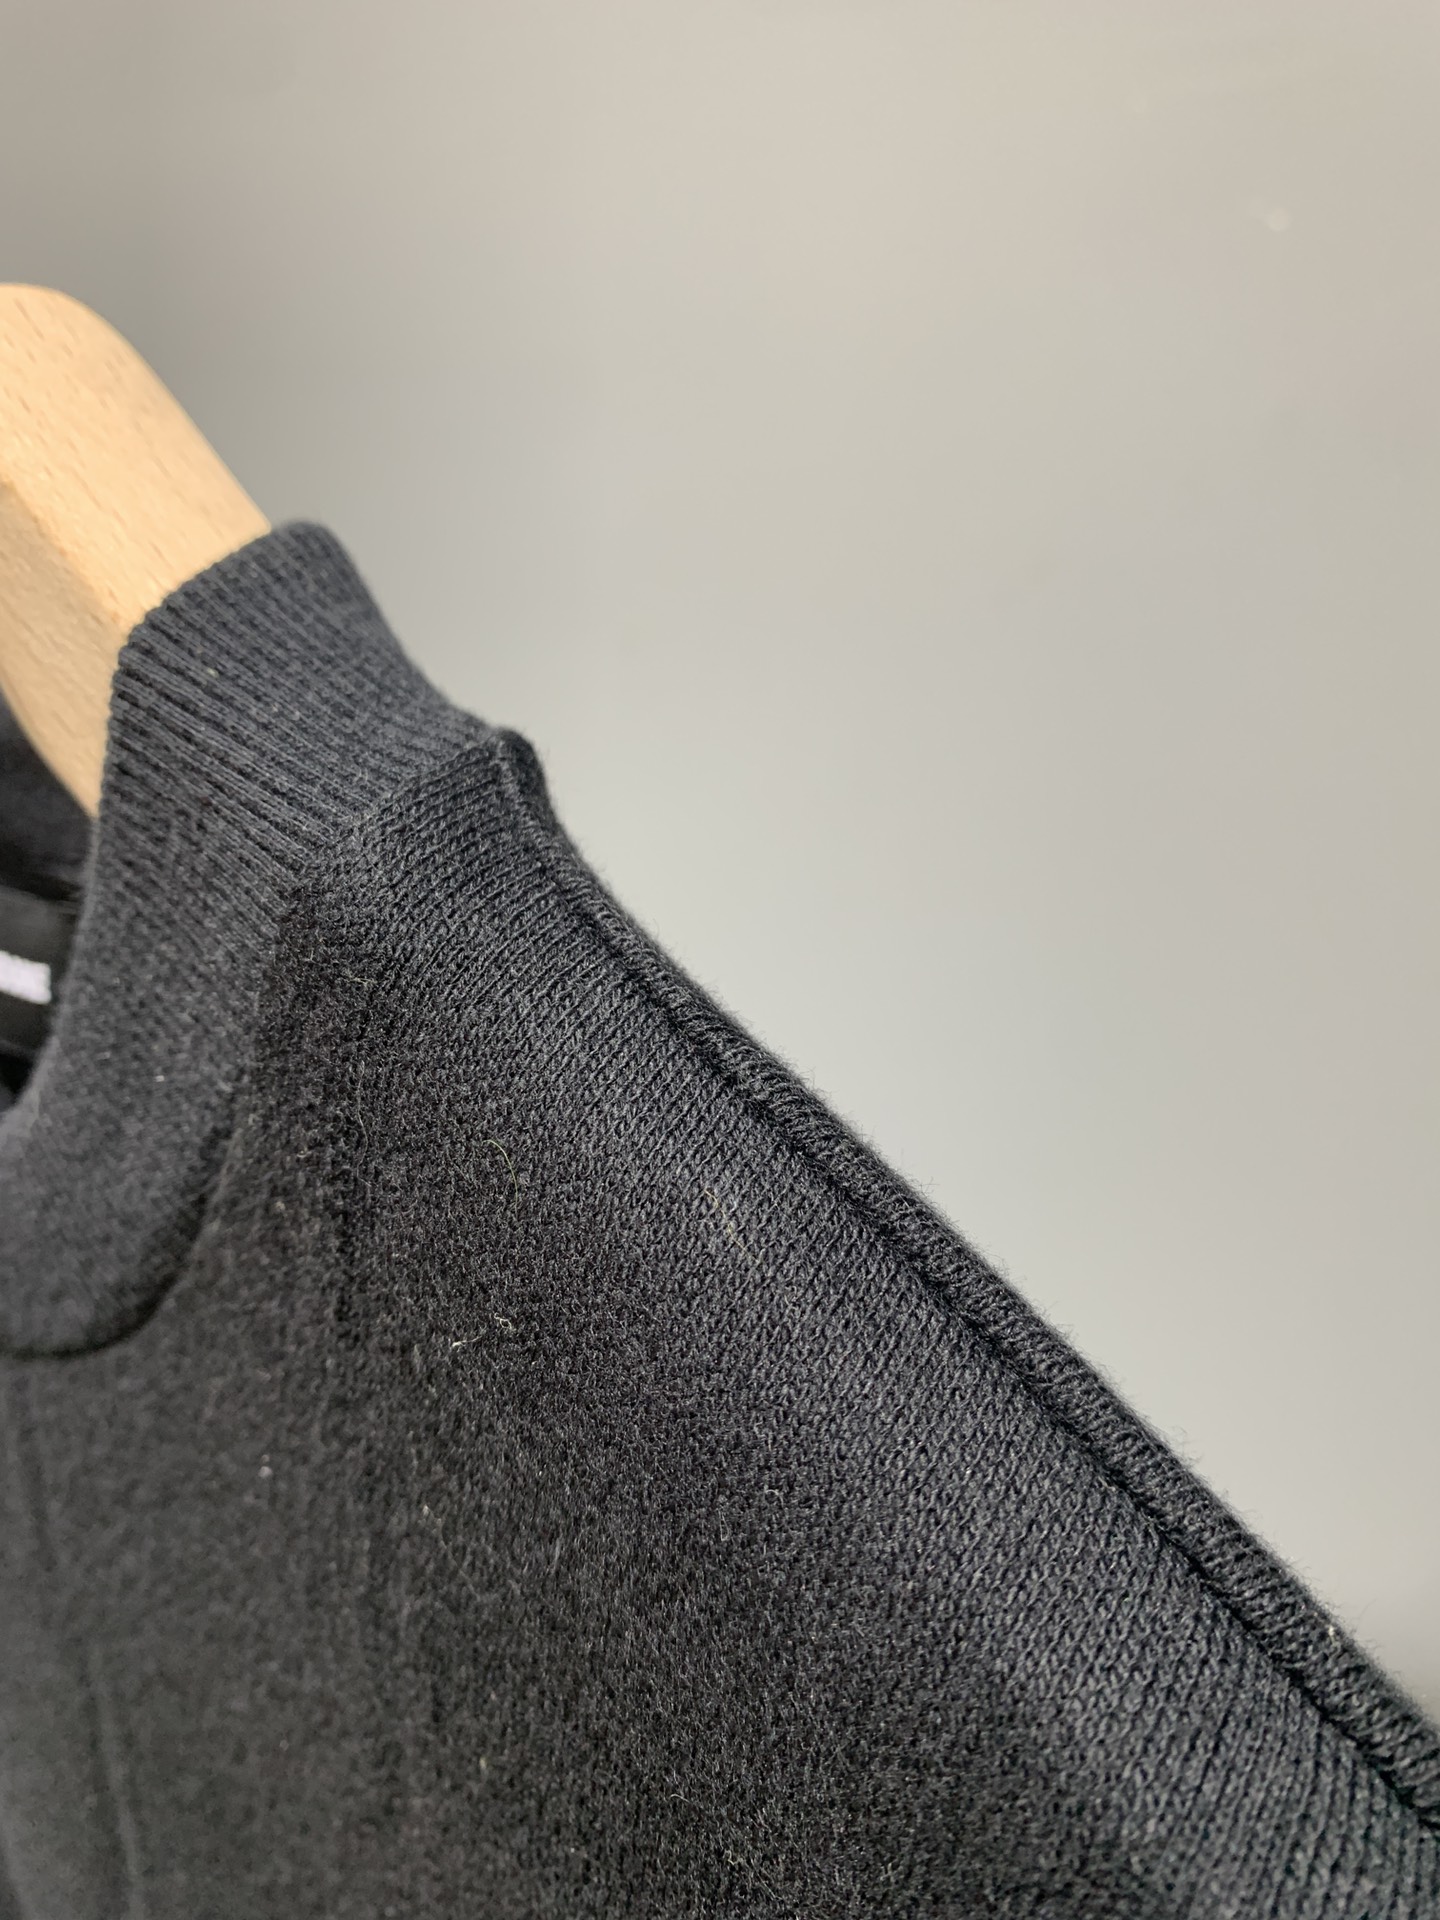 WE11DONE tシャツヘビーウェイト激安通販 最安値人気 純綿トップス 人気新作 短袖Tシャツ 2色可選 ブラック_4